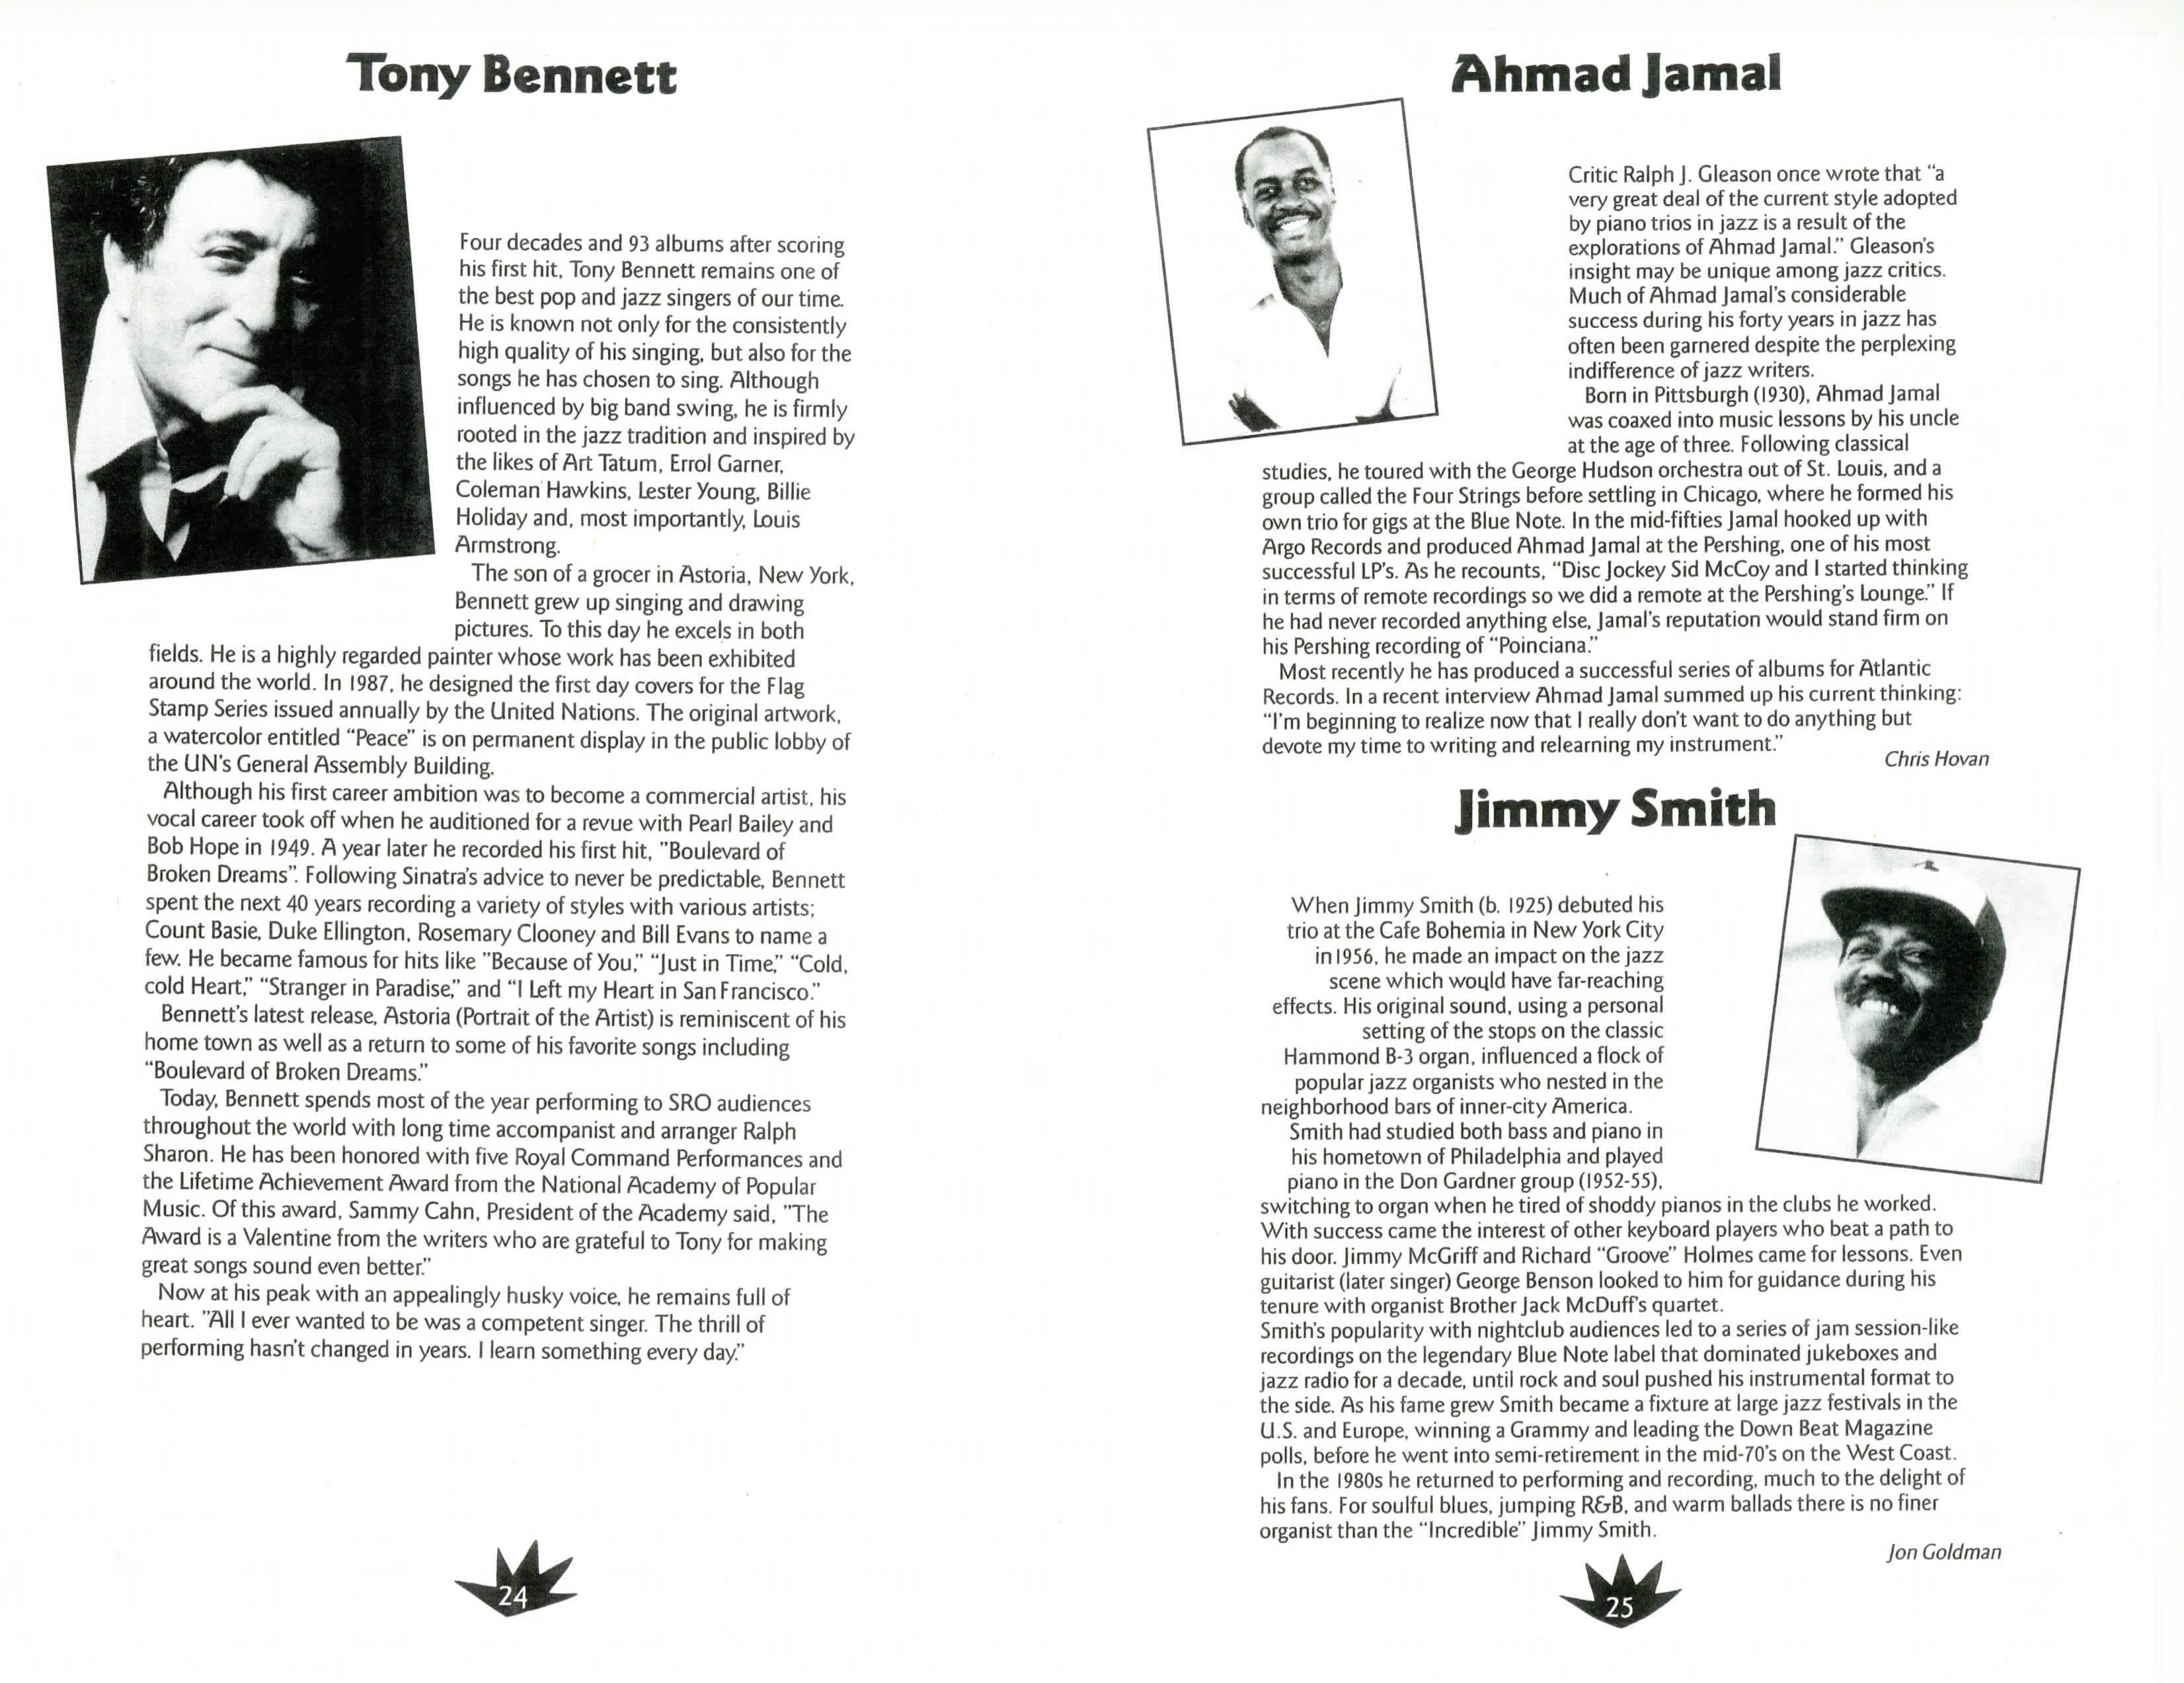 Ahmad Jamal Program Bio